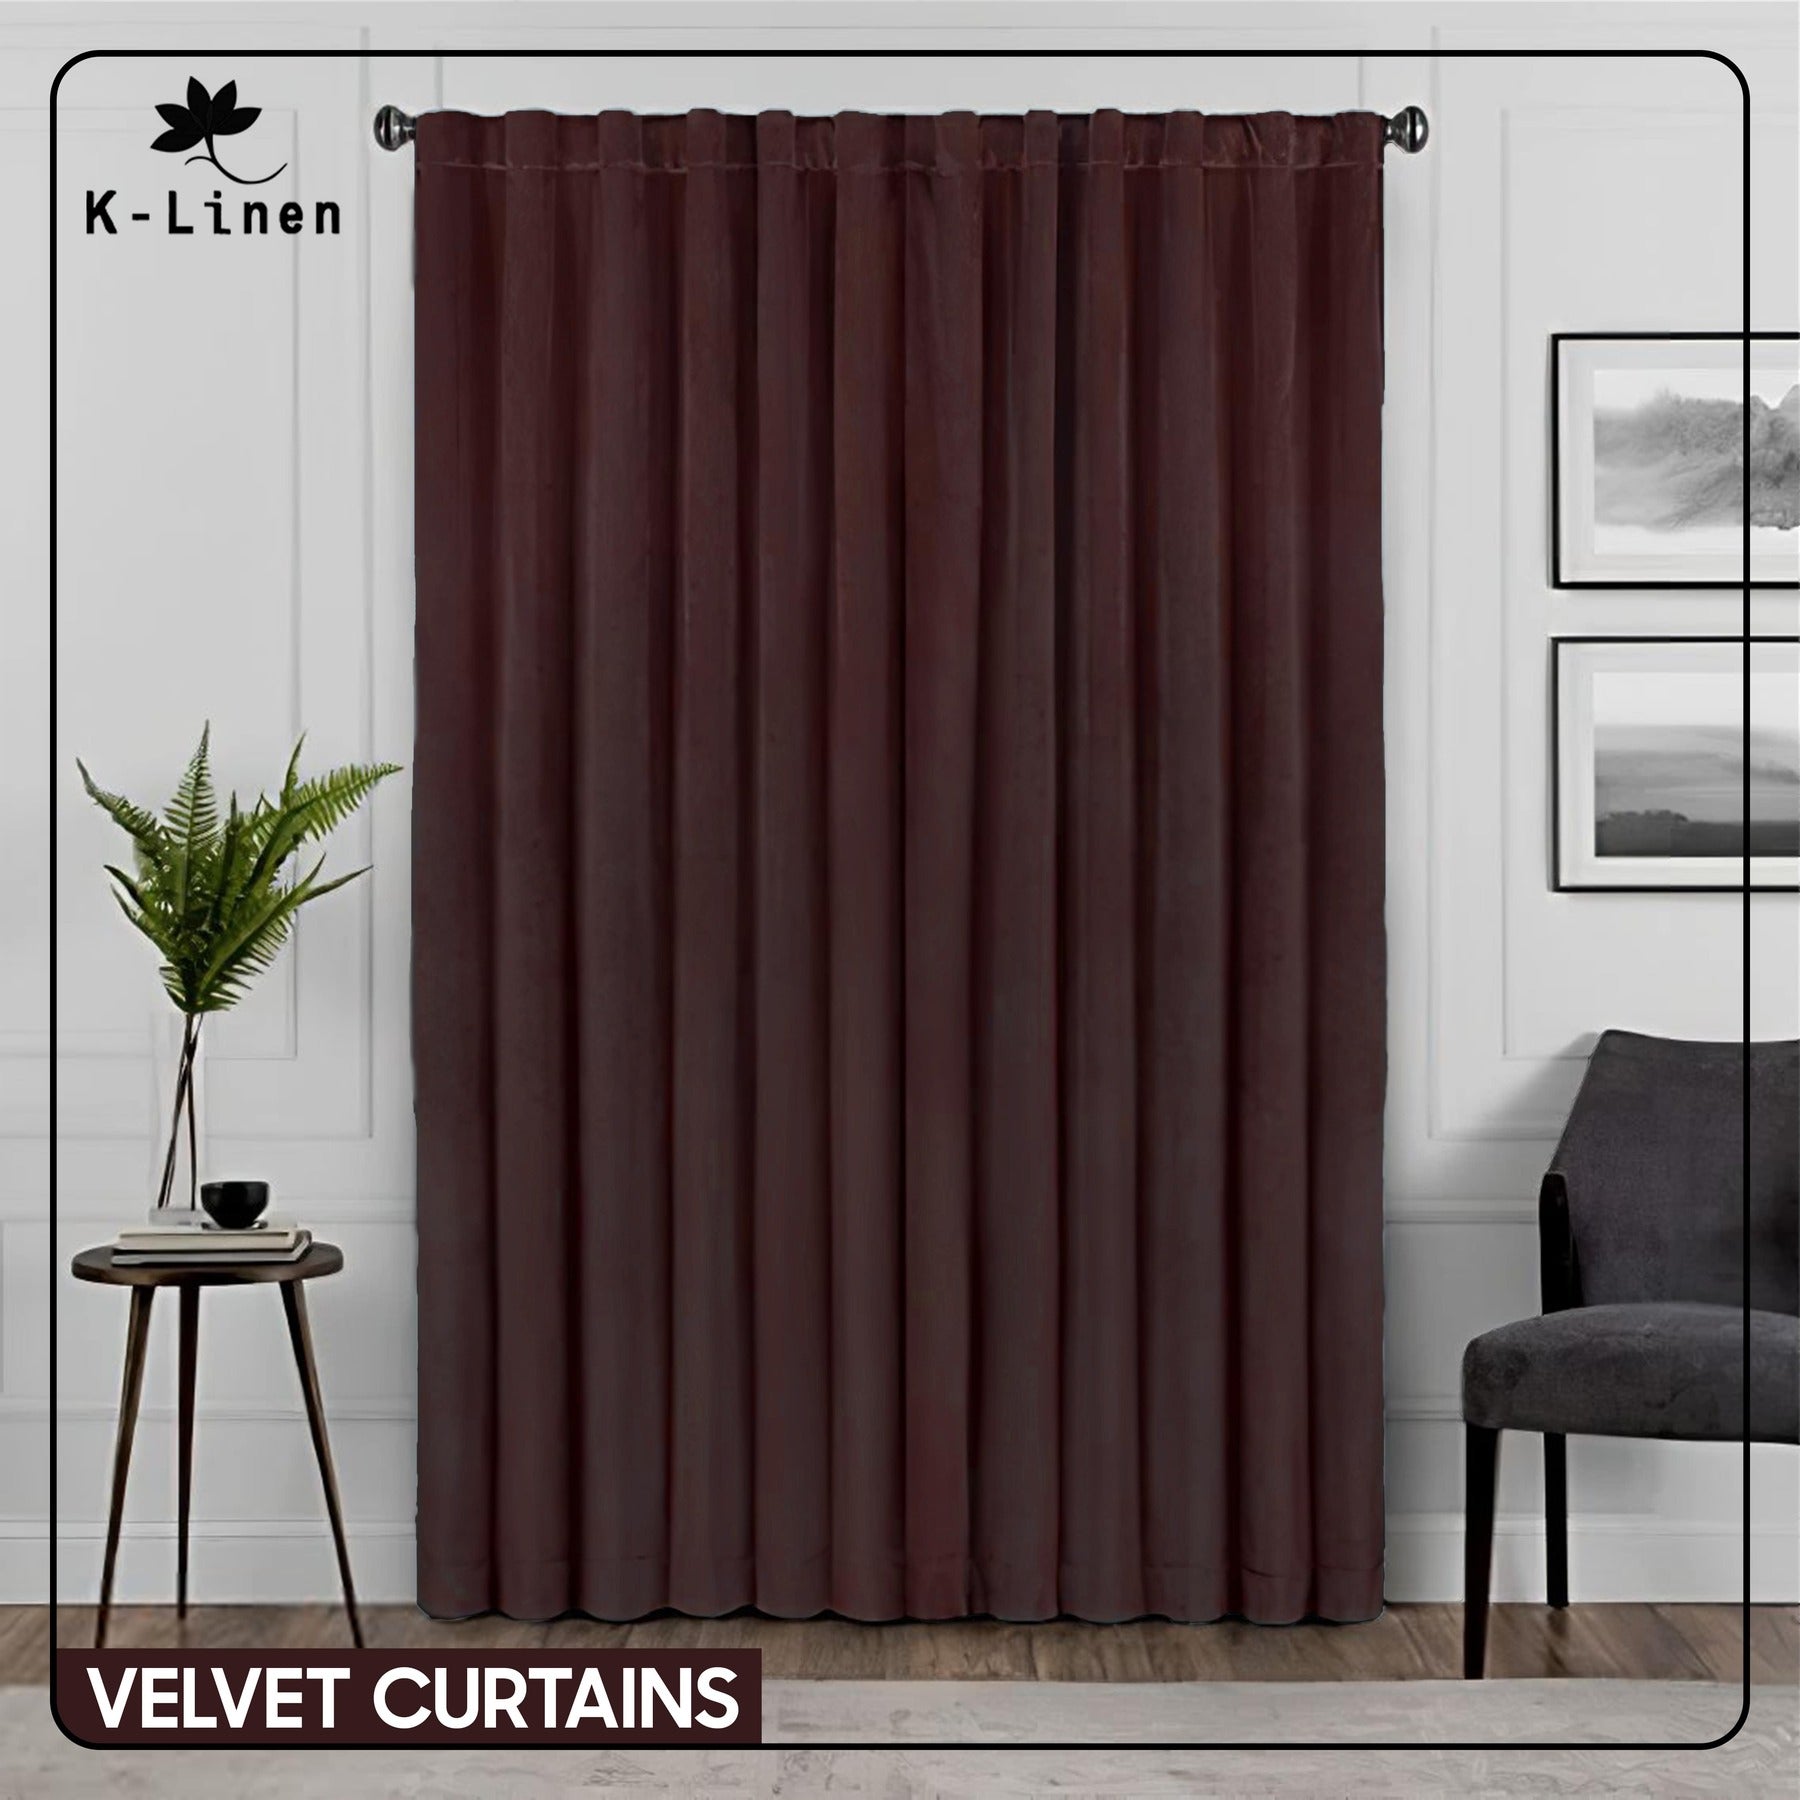 Premium Velvet Curtain - Dark Brown